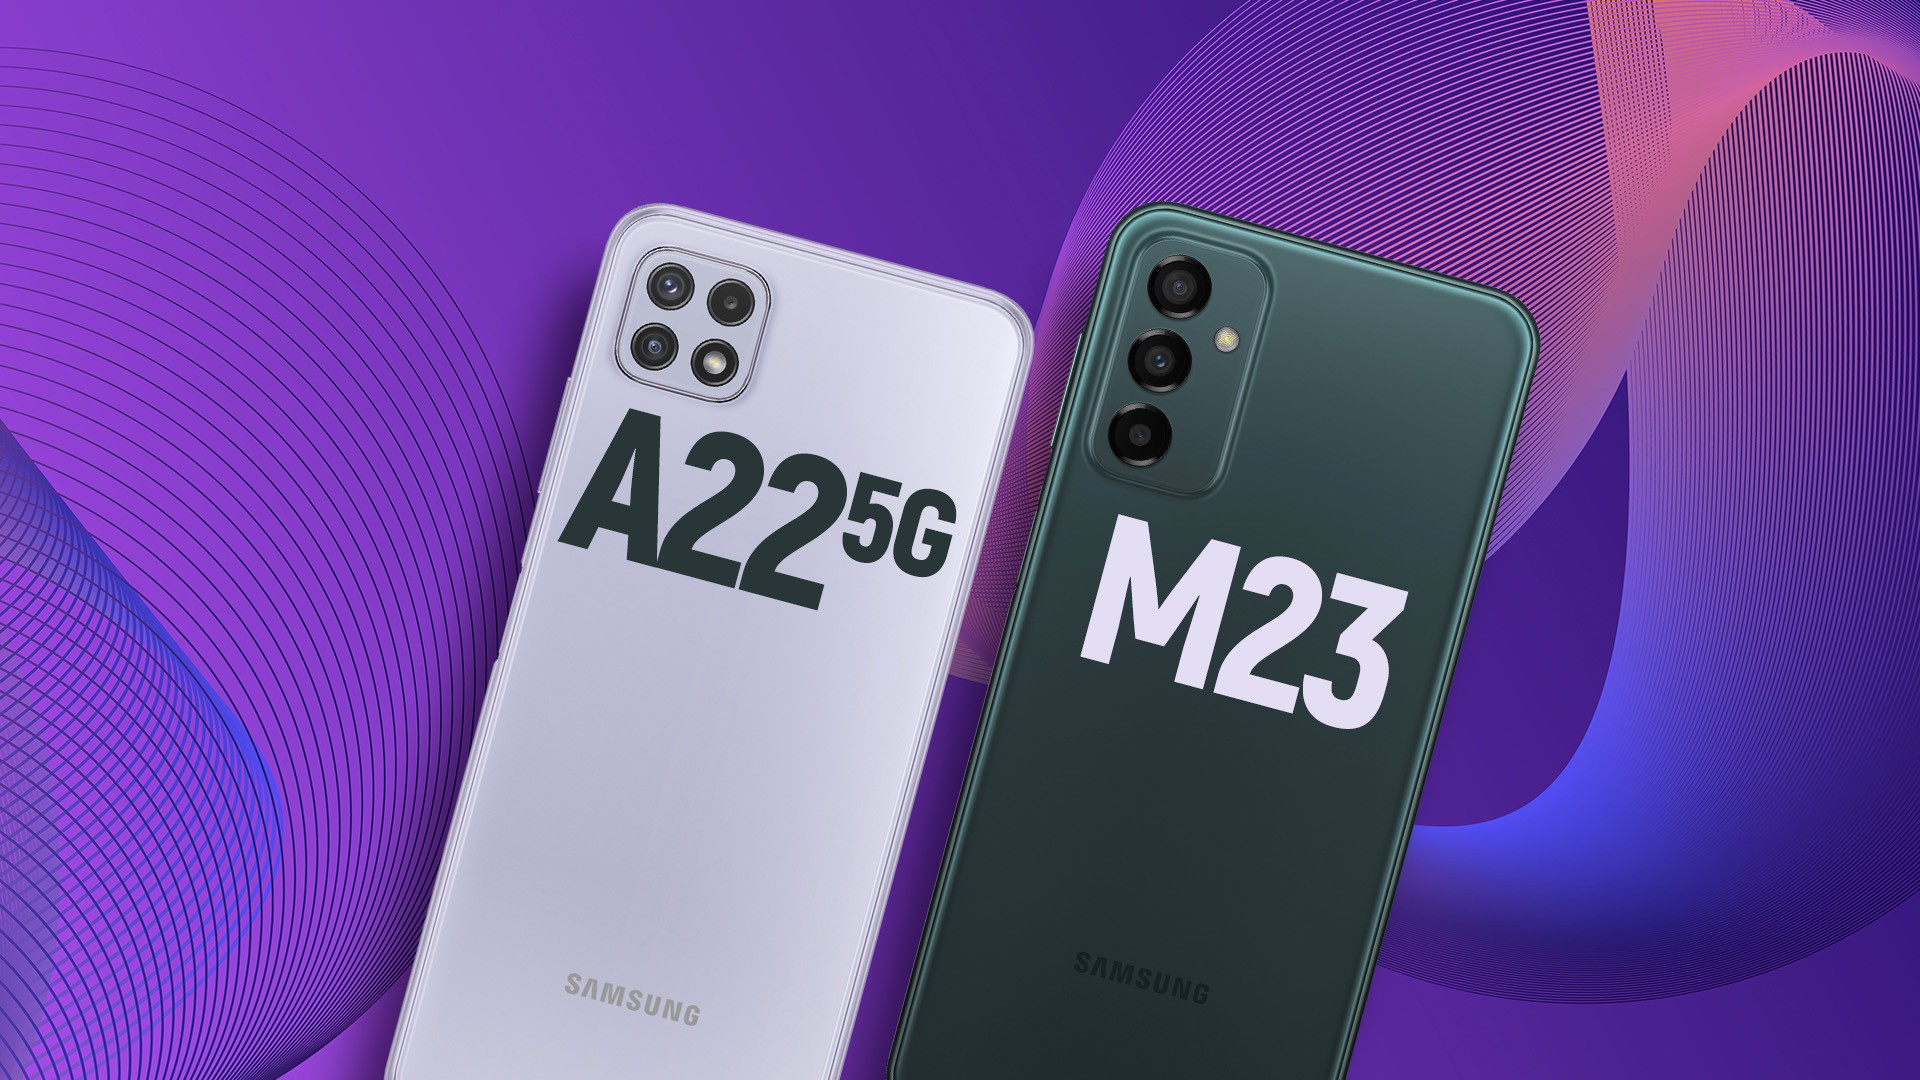 Celular Samsung Galaxy M23 é bom? Veja preço e ficha técnica completa